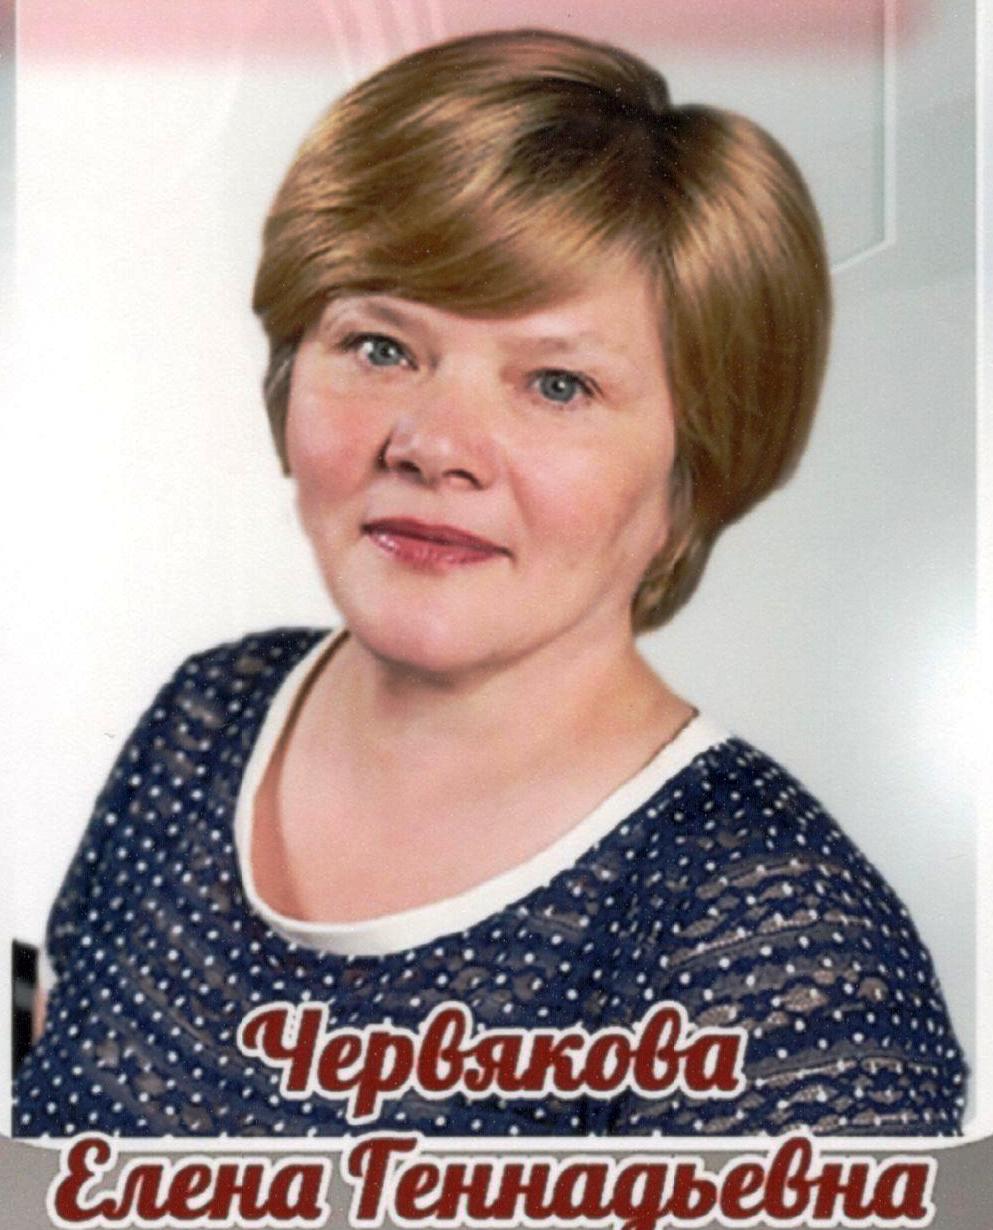 Червякова Елена Геннадьевна.